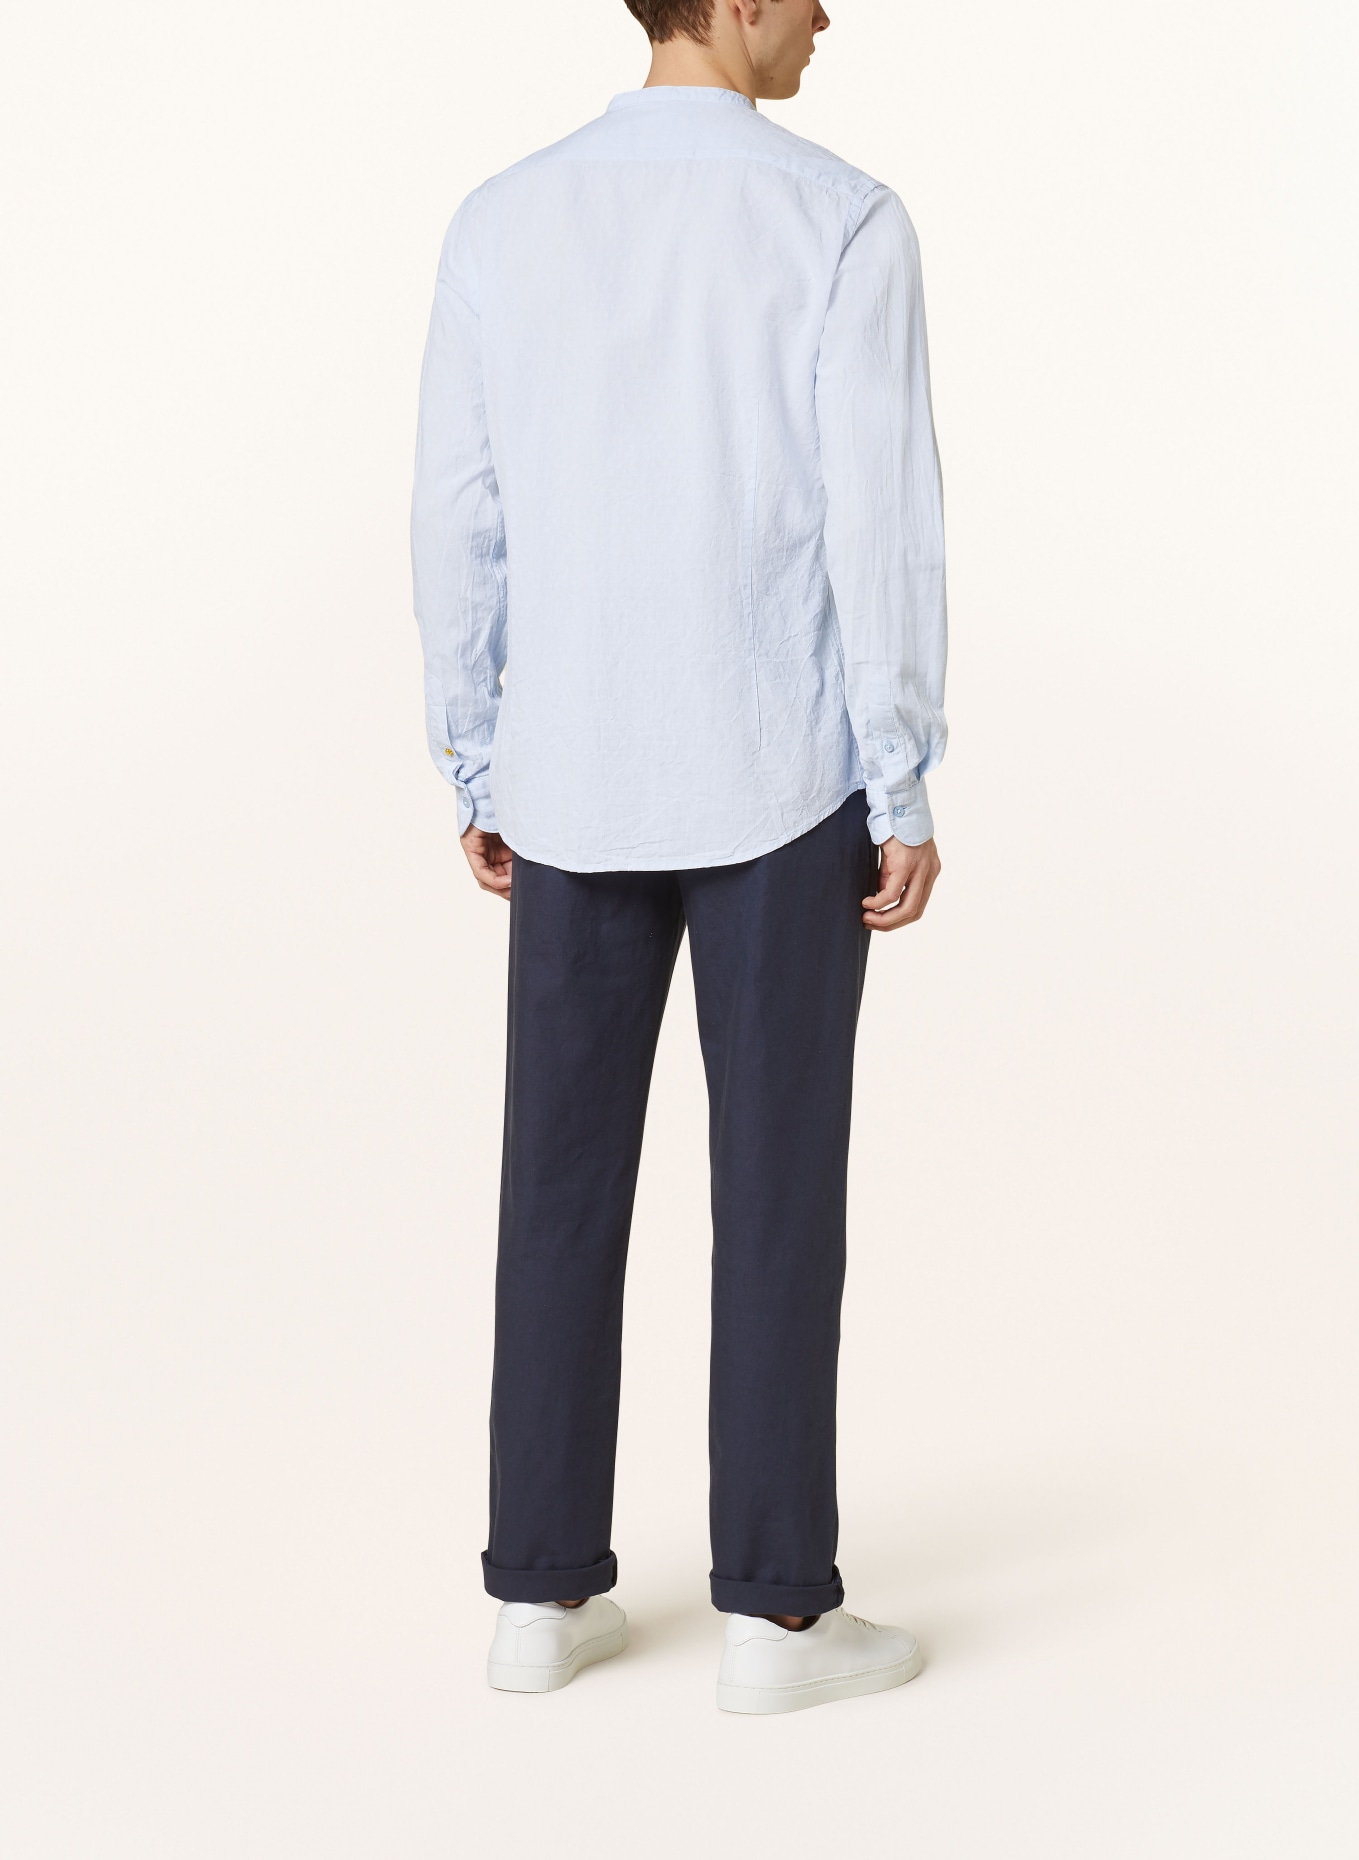 Q1 Manufaktur Hemd Slim Relaxed Fit mit Stehkragen und Leinen, Farbe: HELLBLAU (Bild 3)